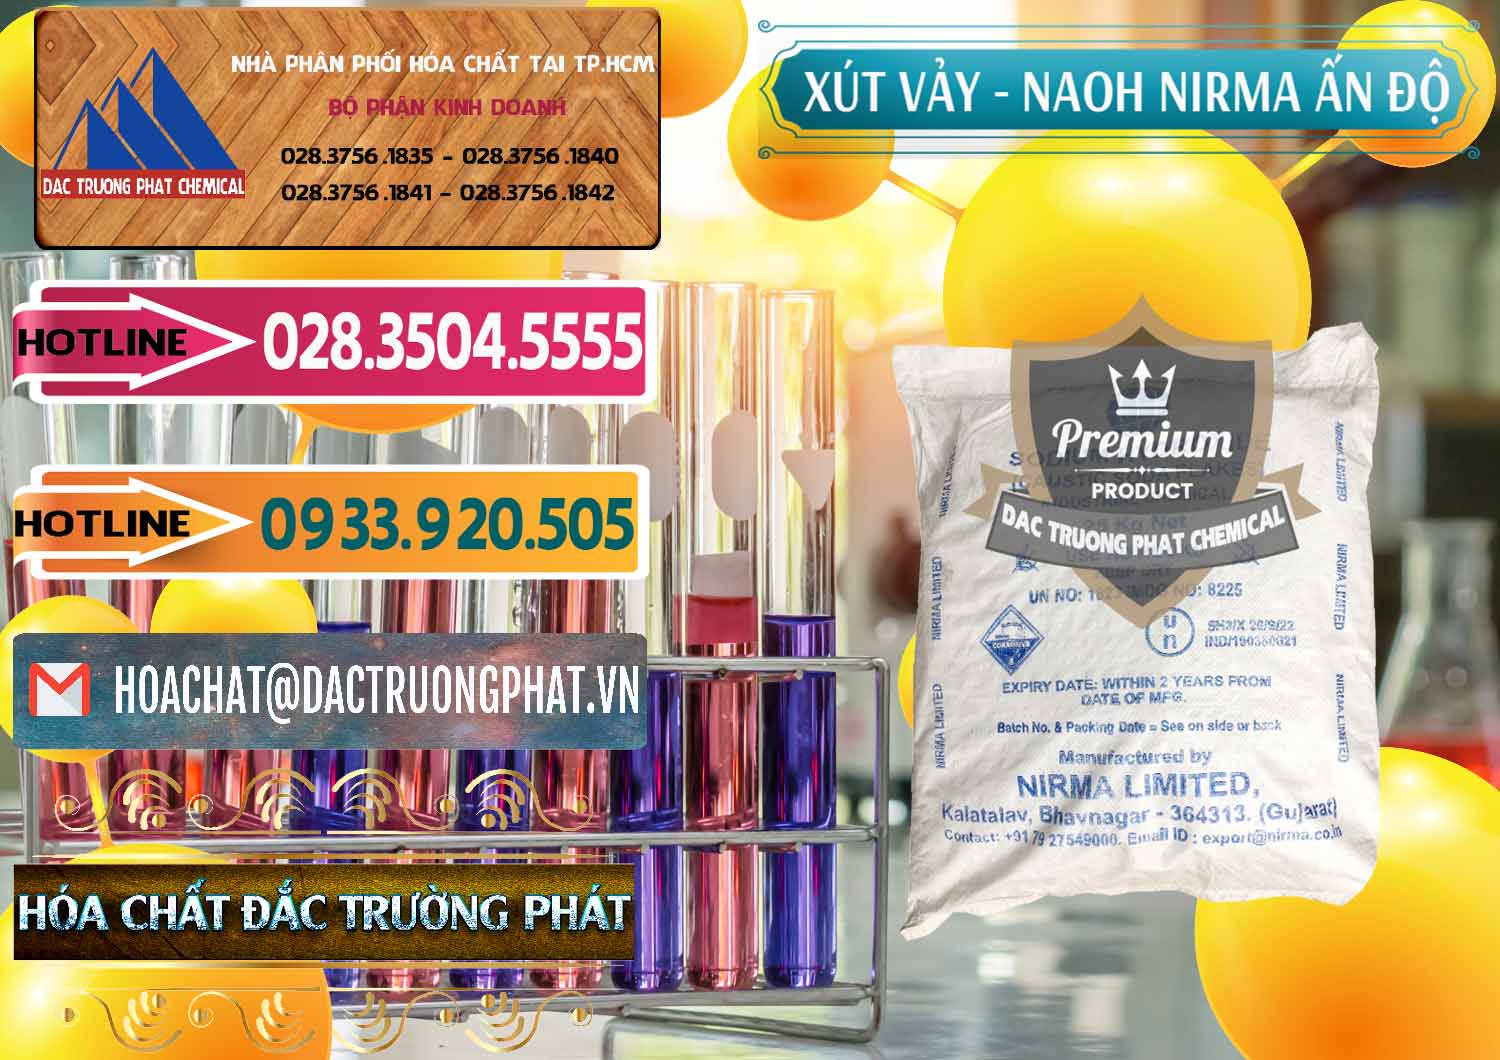 Nơi cung ứng ( bán ) Xút Vảy - NaOH Vảy Nirma Ấn Độ India - 0371 - Cty cung cấp ( kinh doanh ) hóa chất tại TP.HCM - dactruongphat.vn